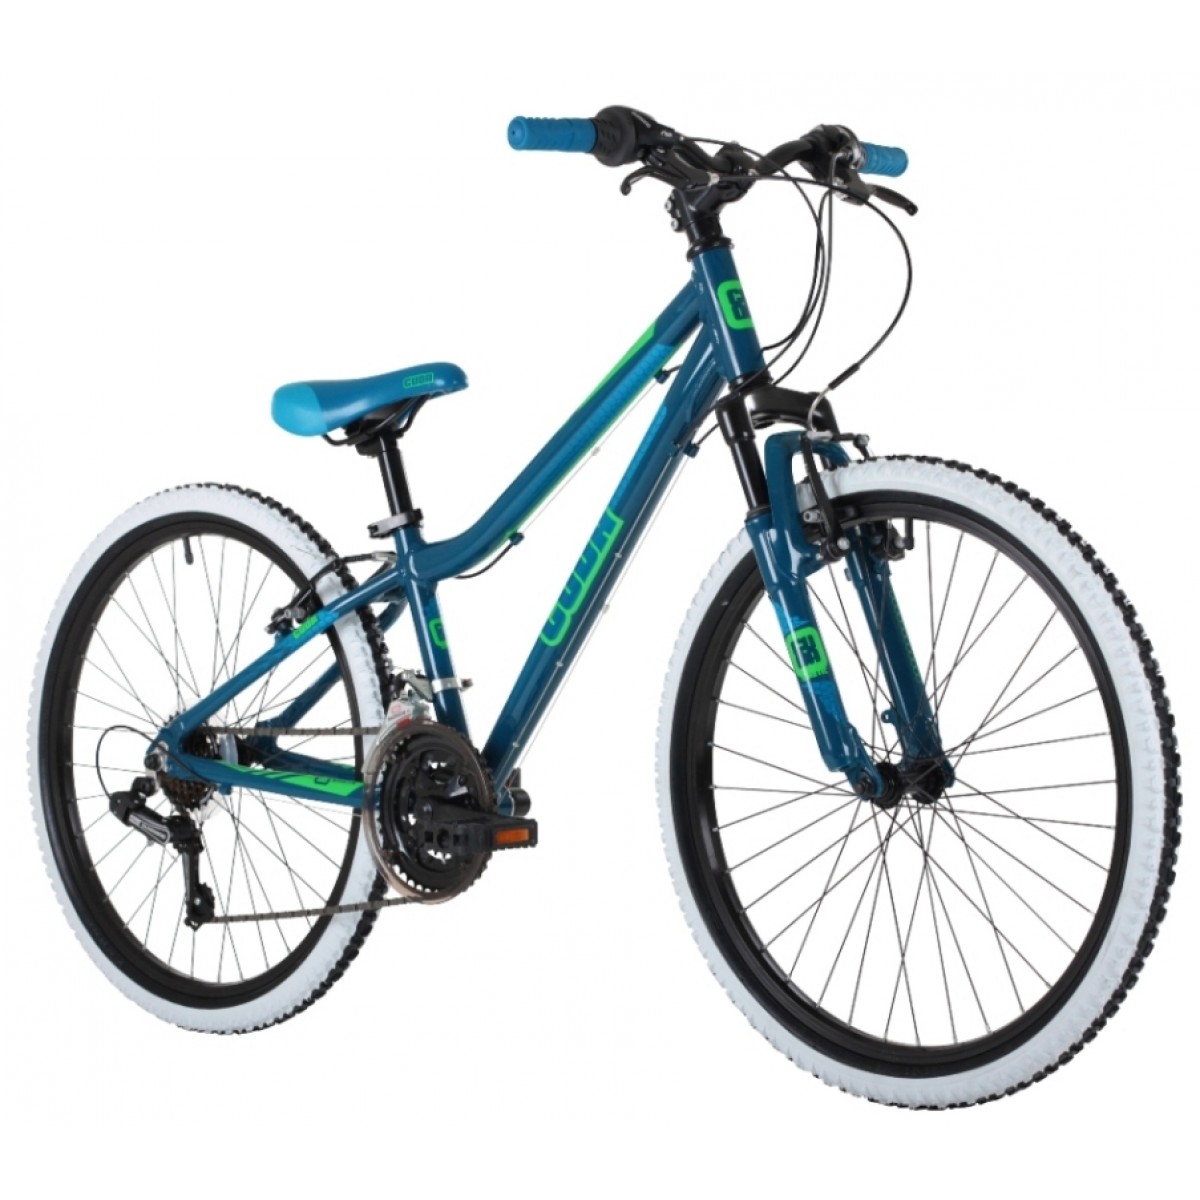 24 inch blue bike